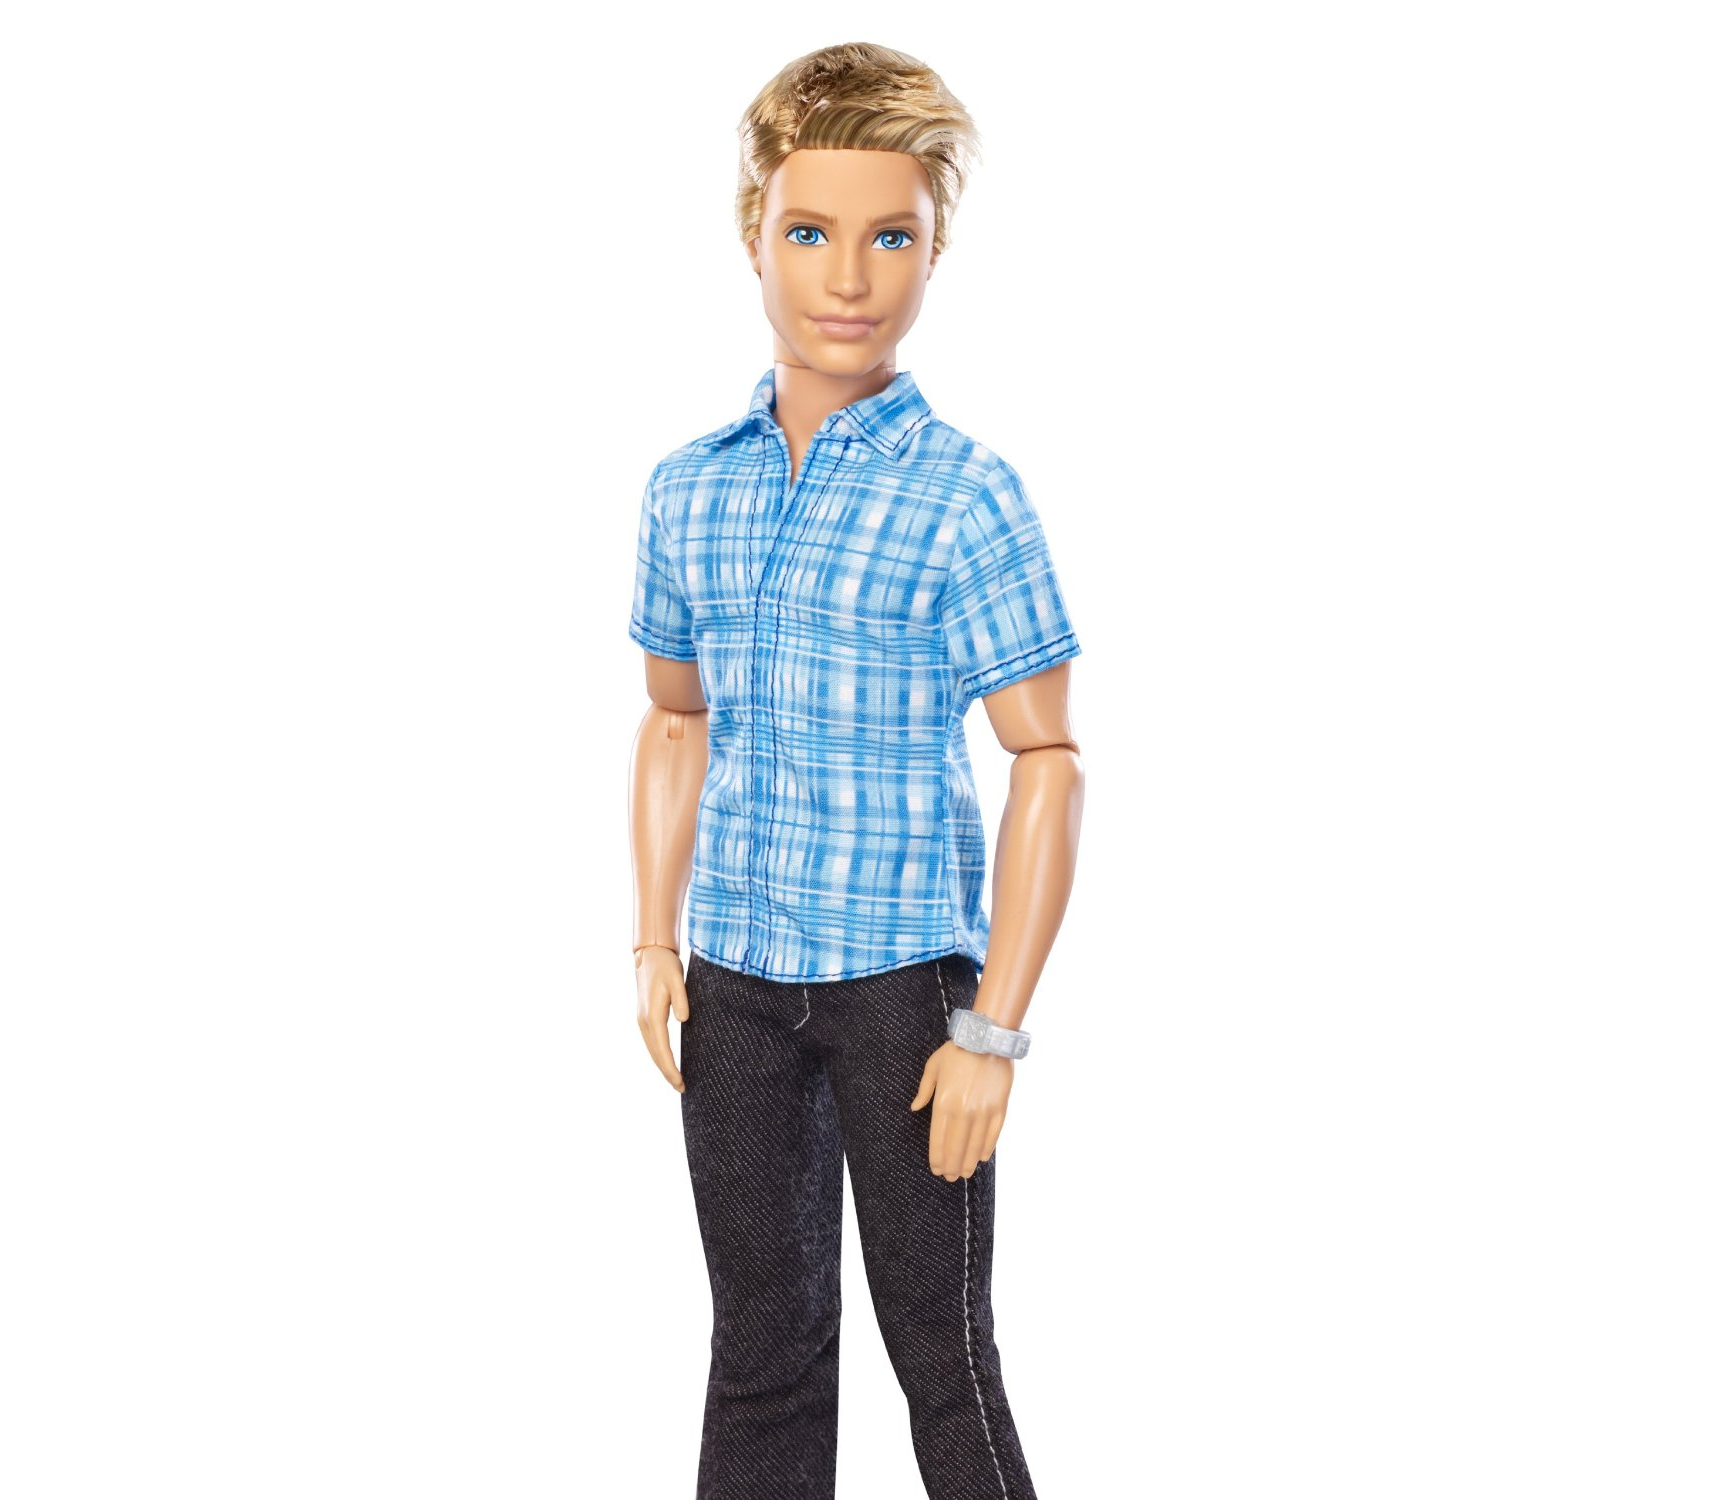 Картинки кукол мальчиков. Куклы Барби и Кен. Кен в полный рост. Куклы Кен Массин. Barbie кукла Кен.